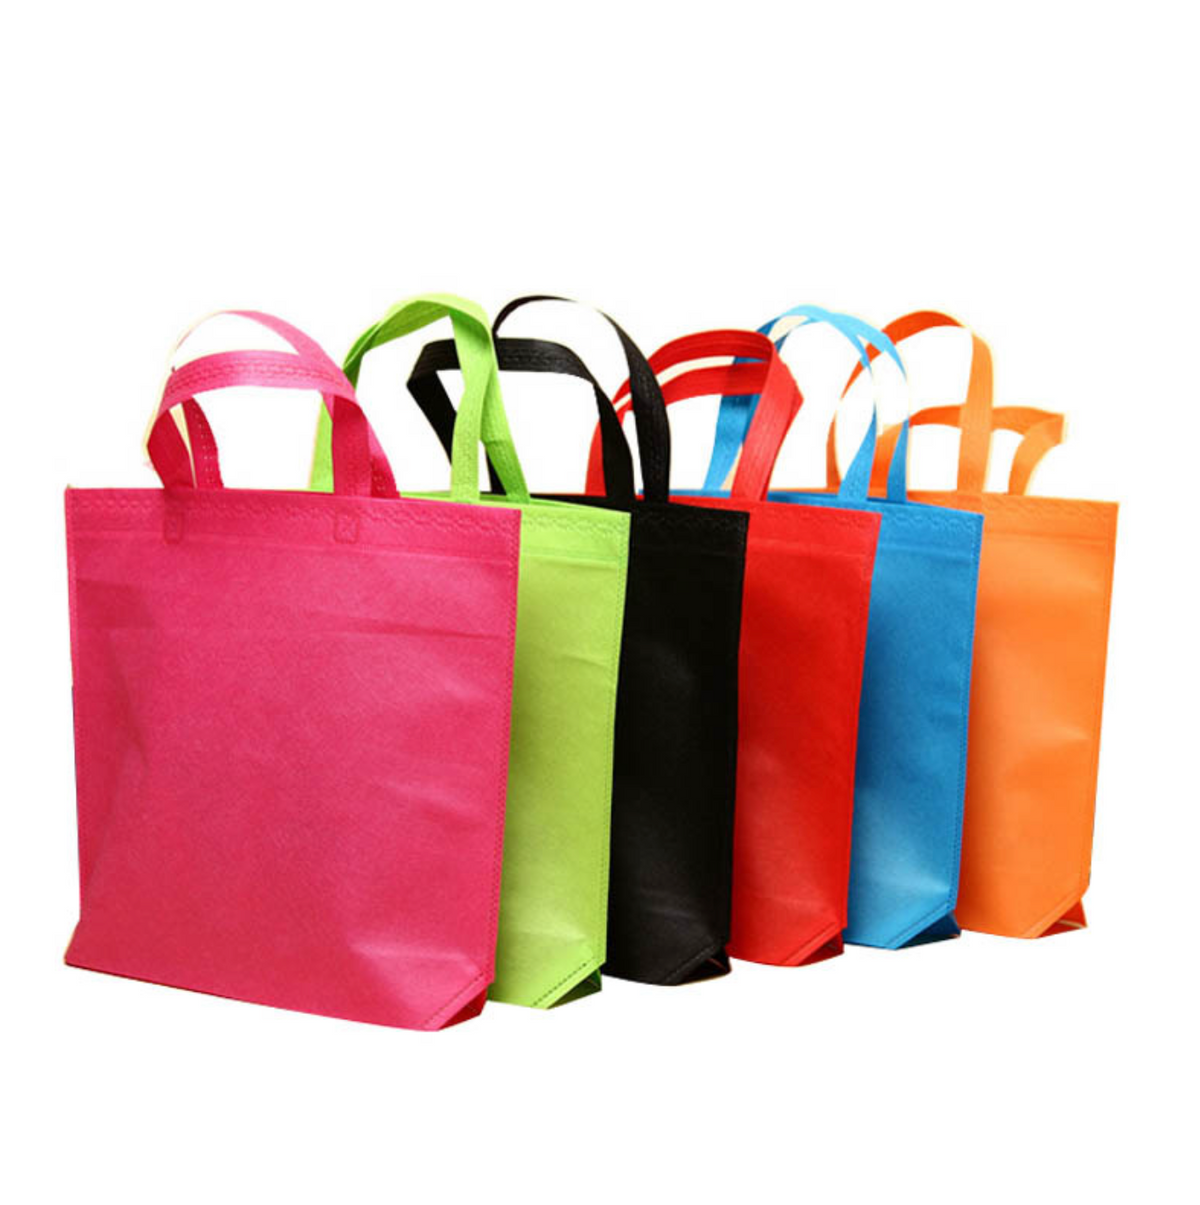 【客製化】覆膜不織布購物袋環保袋(有底無側款) | 禮品、贈品專業客製禮贈品顧問 | 禮品、贈品專屬客製禮贈品專家